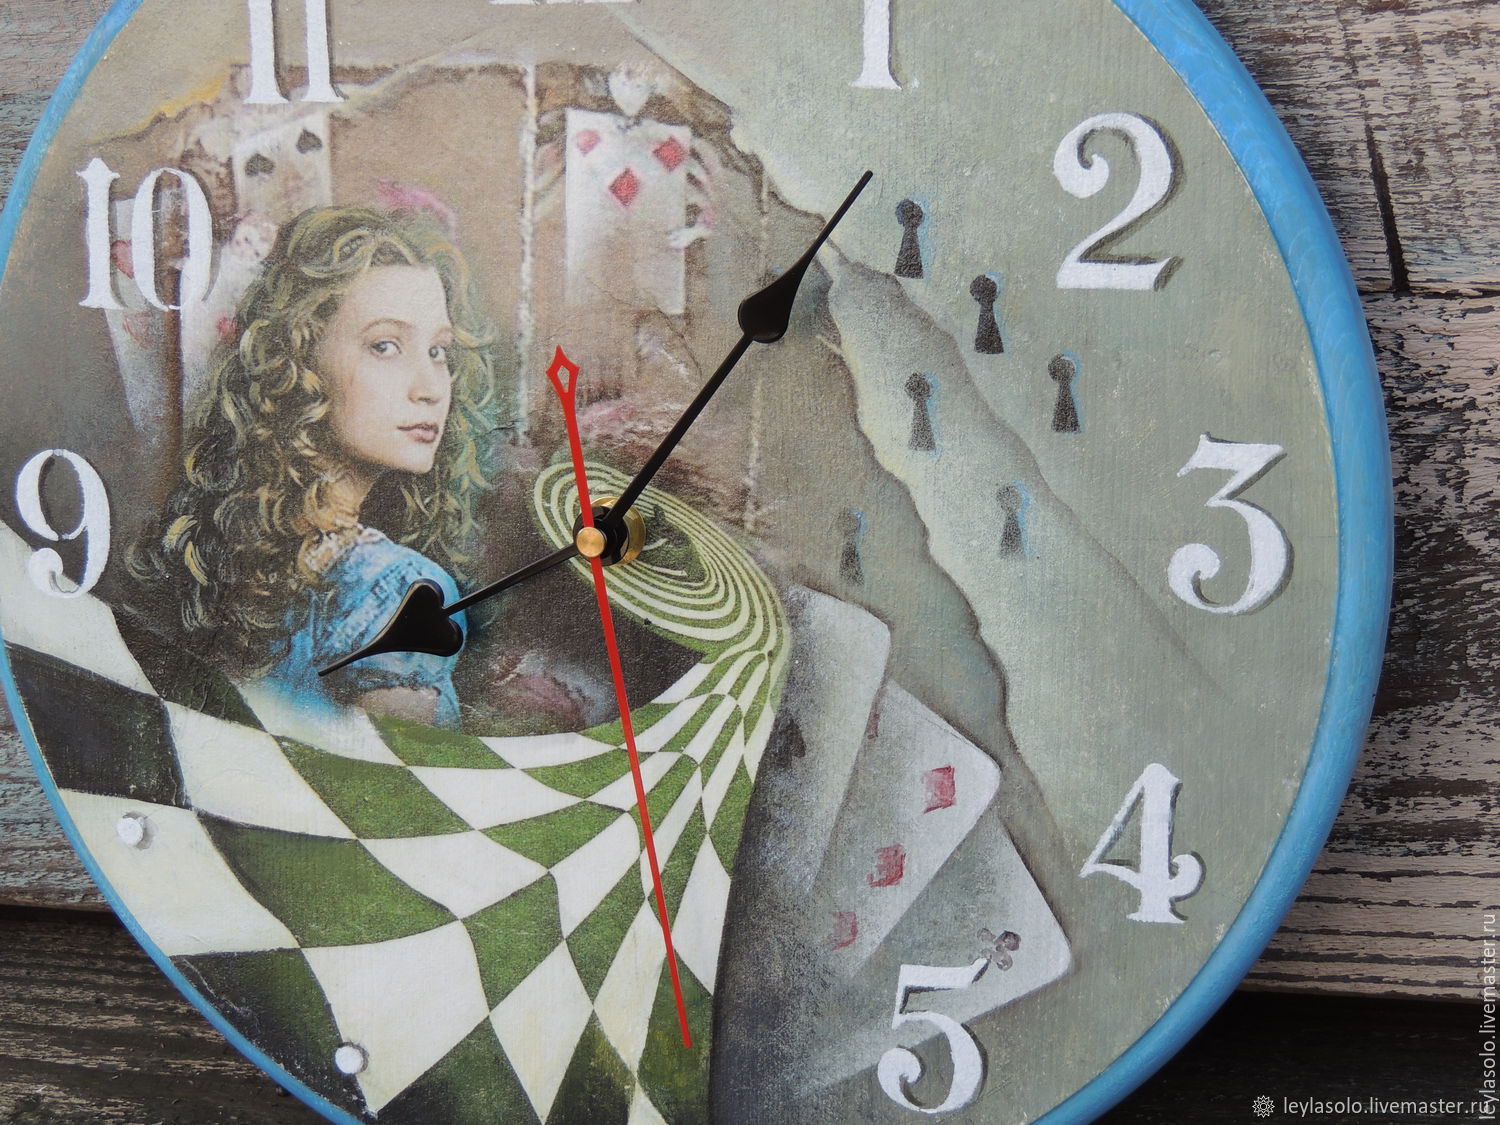 Купить алису без часов. Циферблат часов Алиса в стране чудес. Часы циферблат Алиса в стране чудес. Часы Алиса в стране чудес. Часы из Алисы в стране чудес.